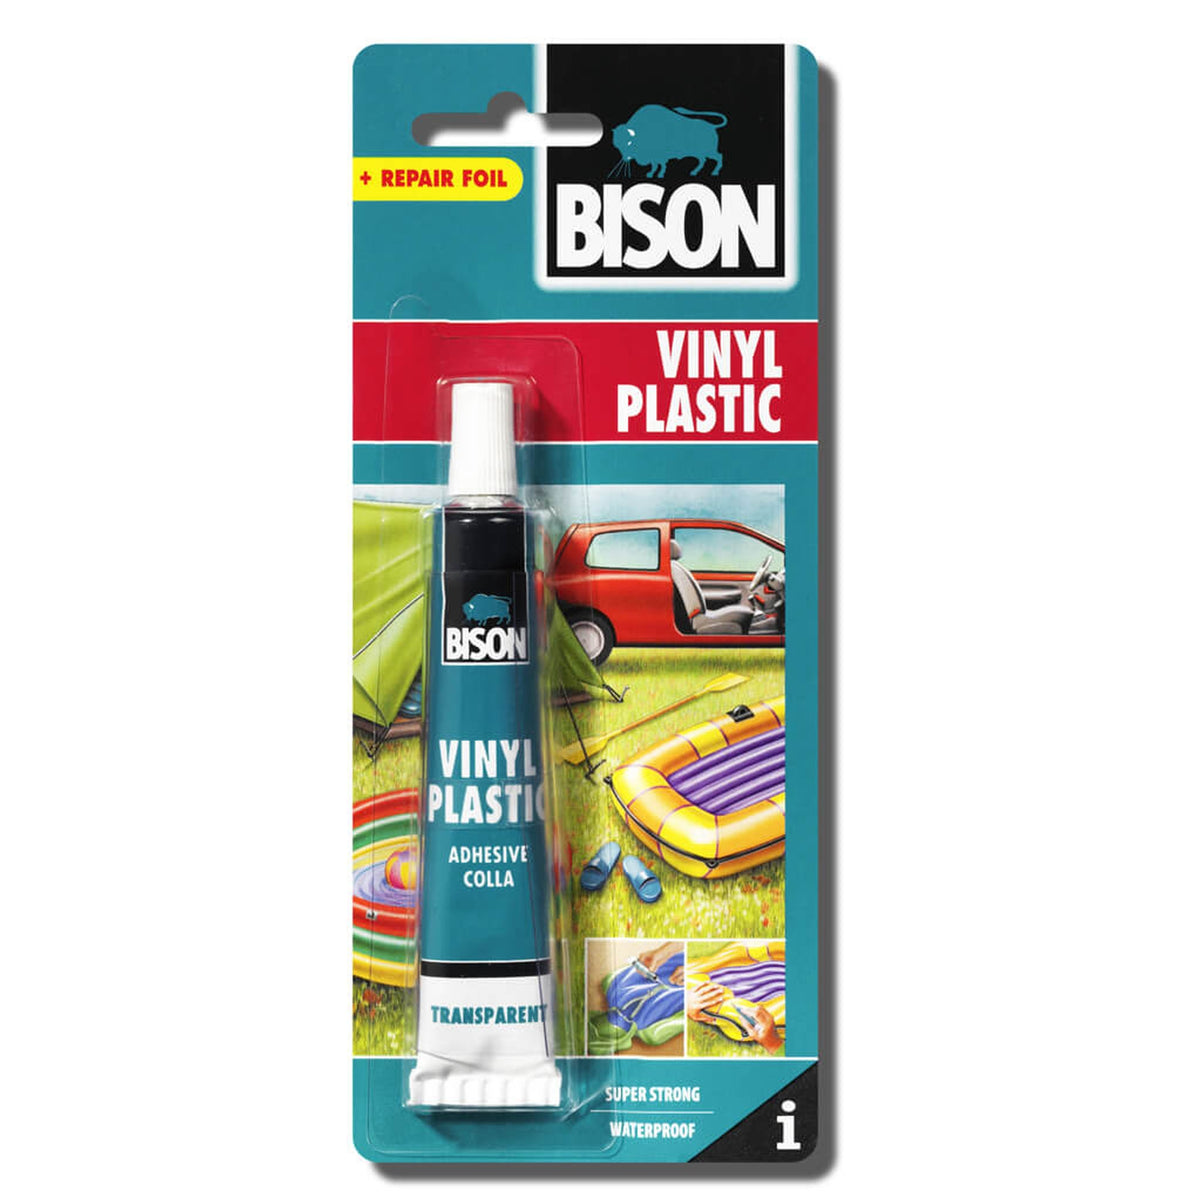 Bison Vinyl Plastic Glue 25ml